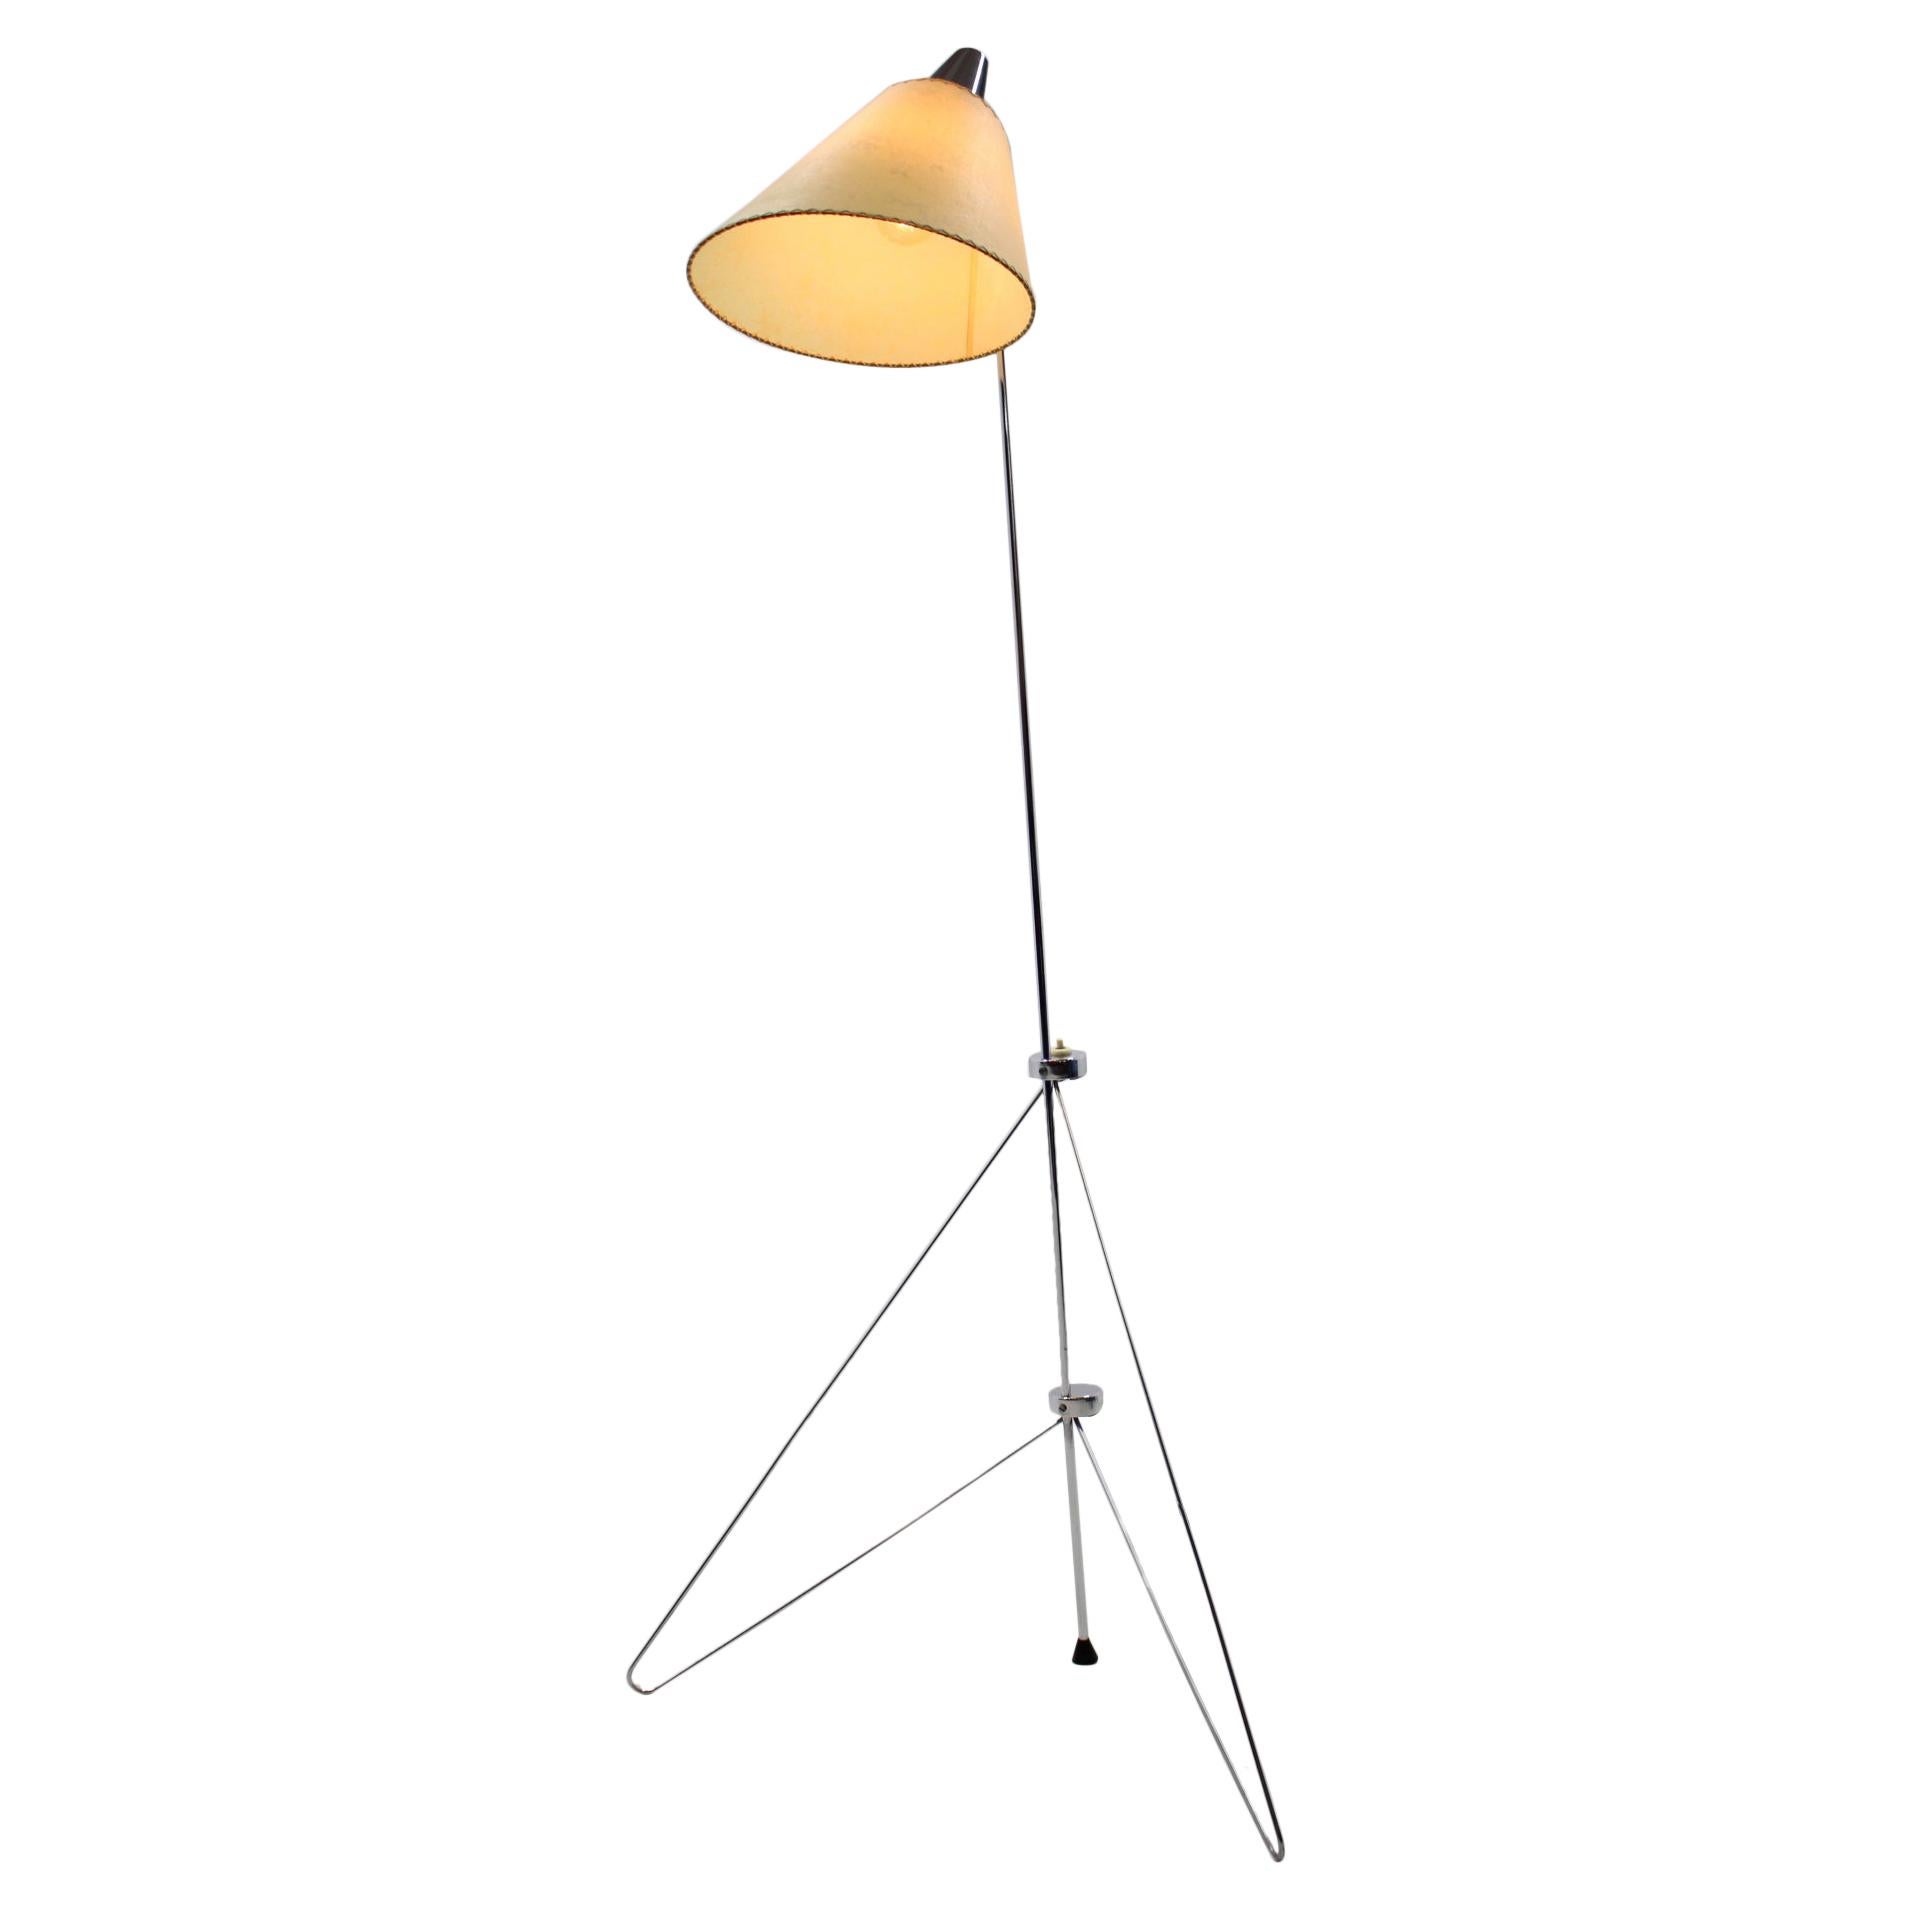 Giraffe Lamps - For Sale on 1stDibs | vintage giraffe lamp, large 